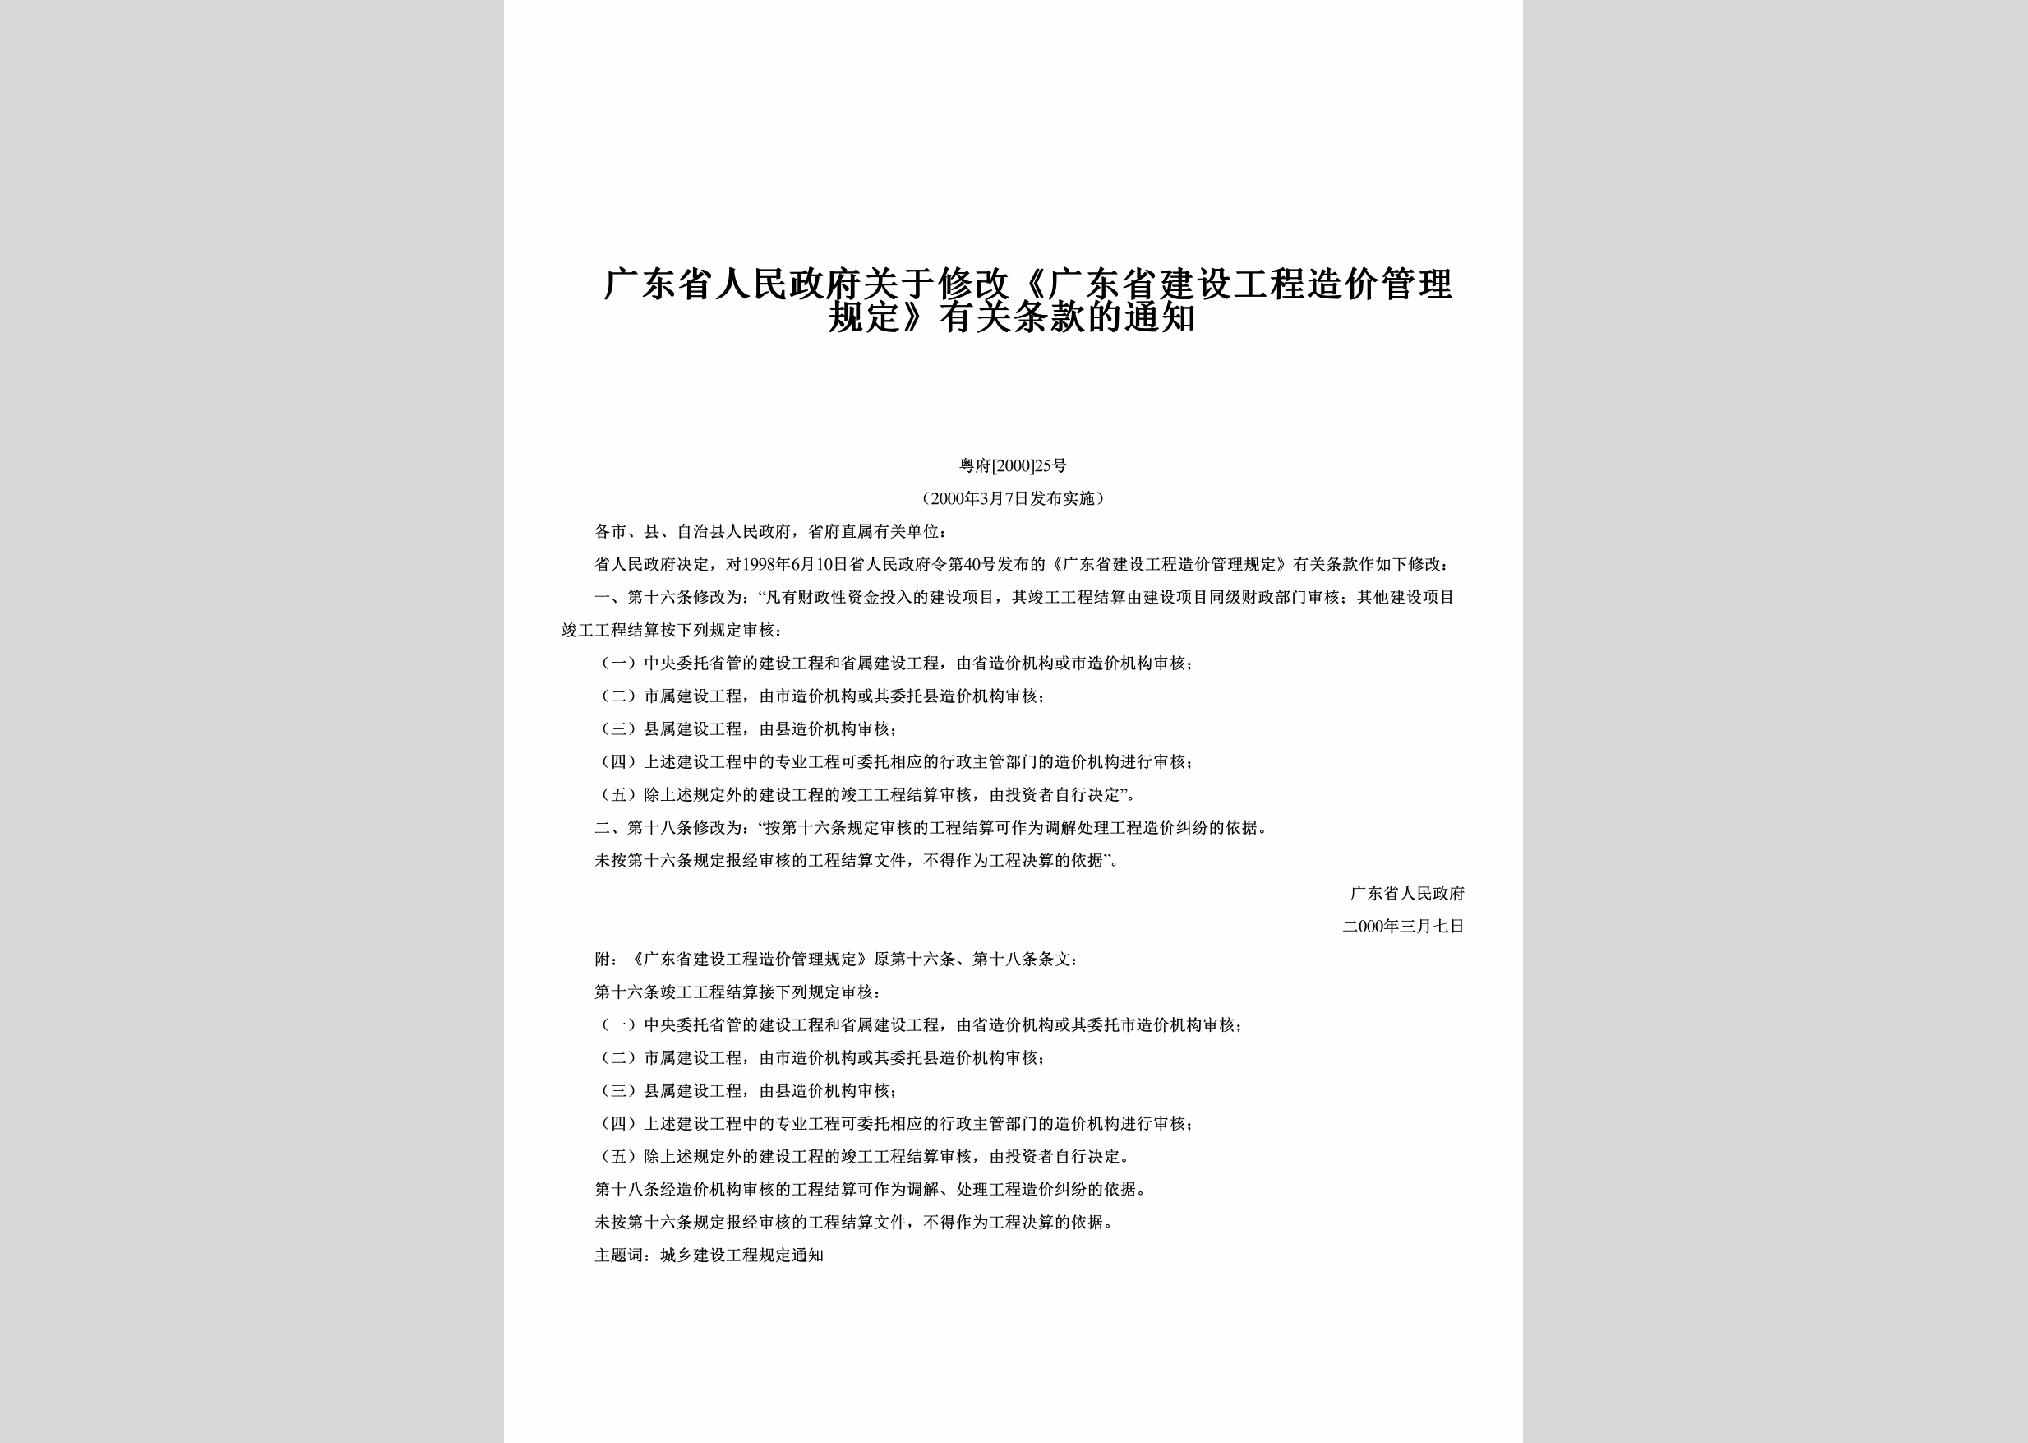 粤府[2000]25号：关于修改《广东省建设工程造价管理规定》有关条款的通知